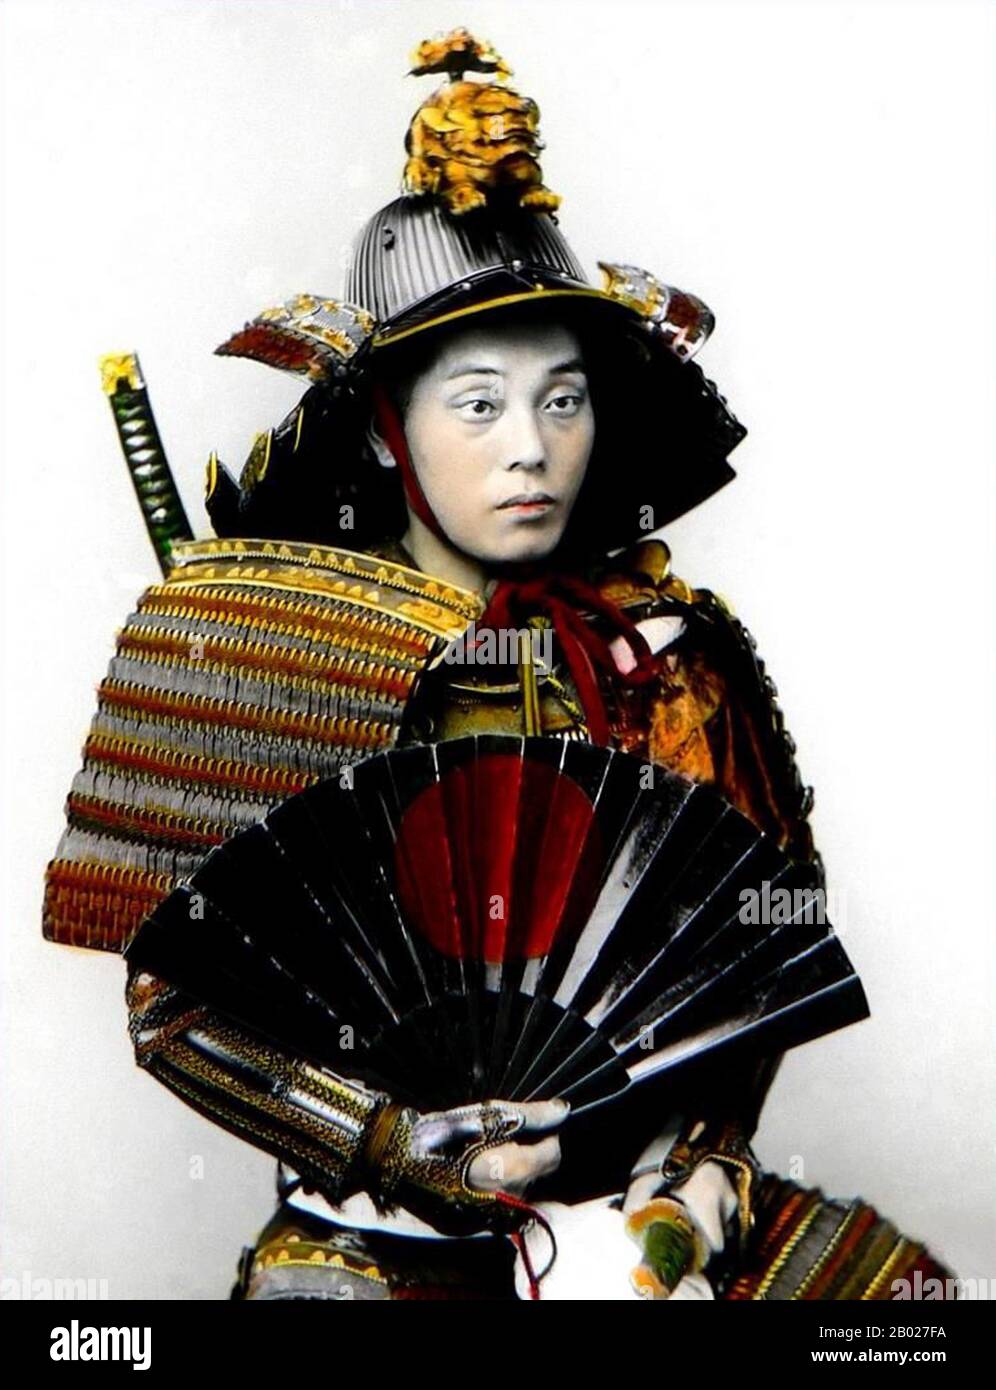 Samurai (侍), généralement appelé buke (武家) ou buke (武士) en japonais, était  la noblesse militaire du Japon médiéval et moderne. À la fin du XIIe  siècle, le samouraï est devenu presque entièrement